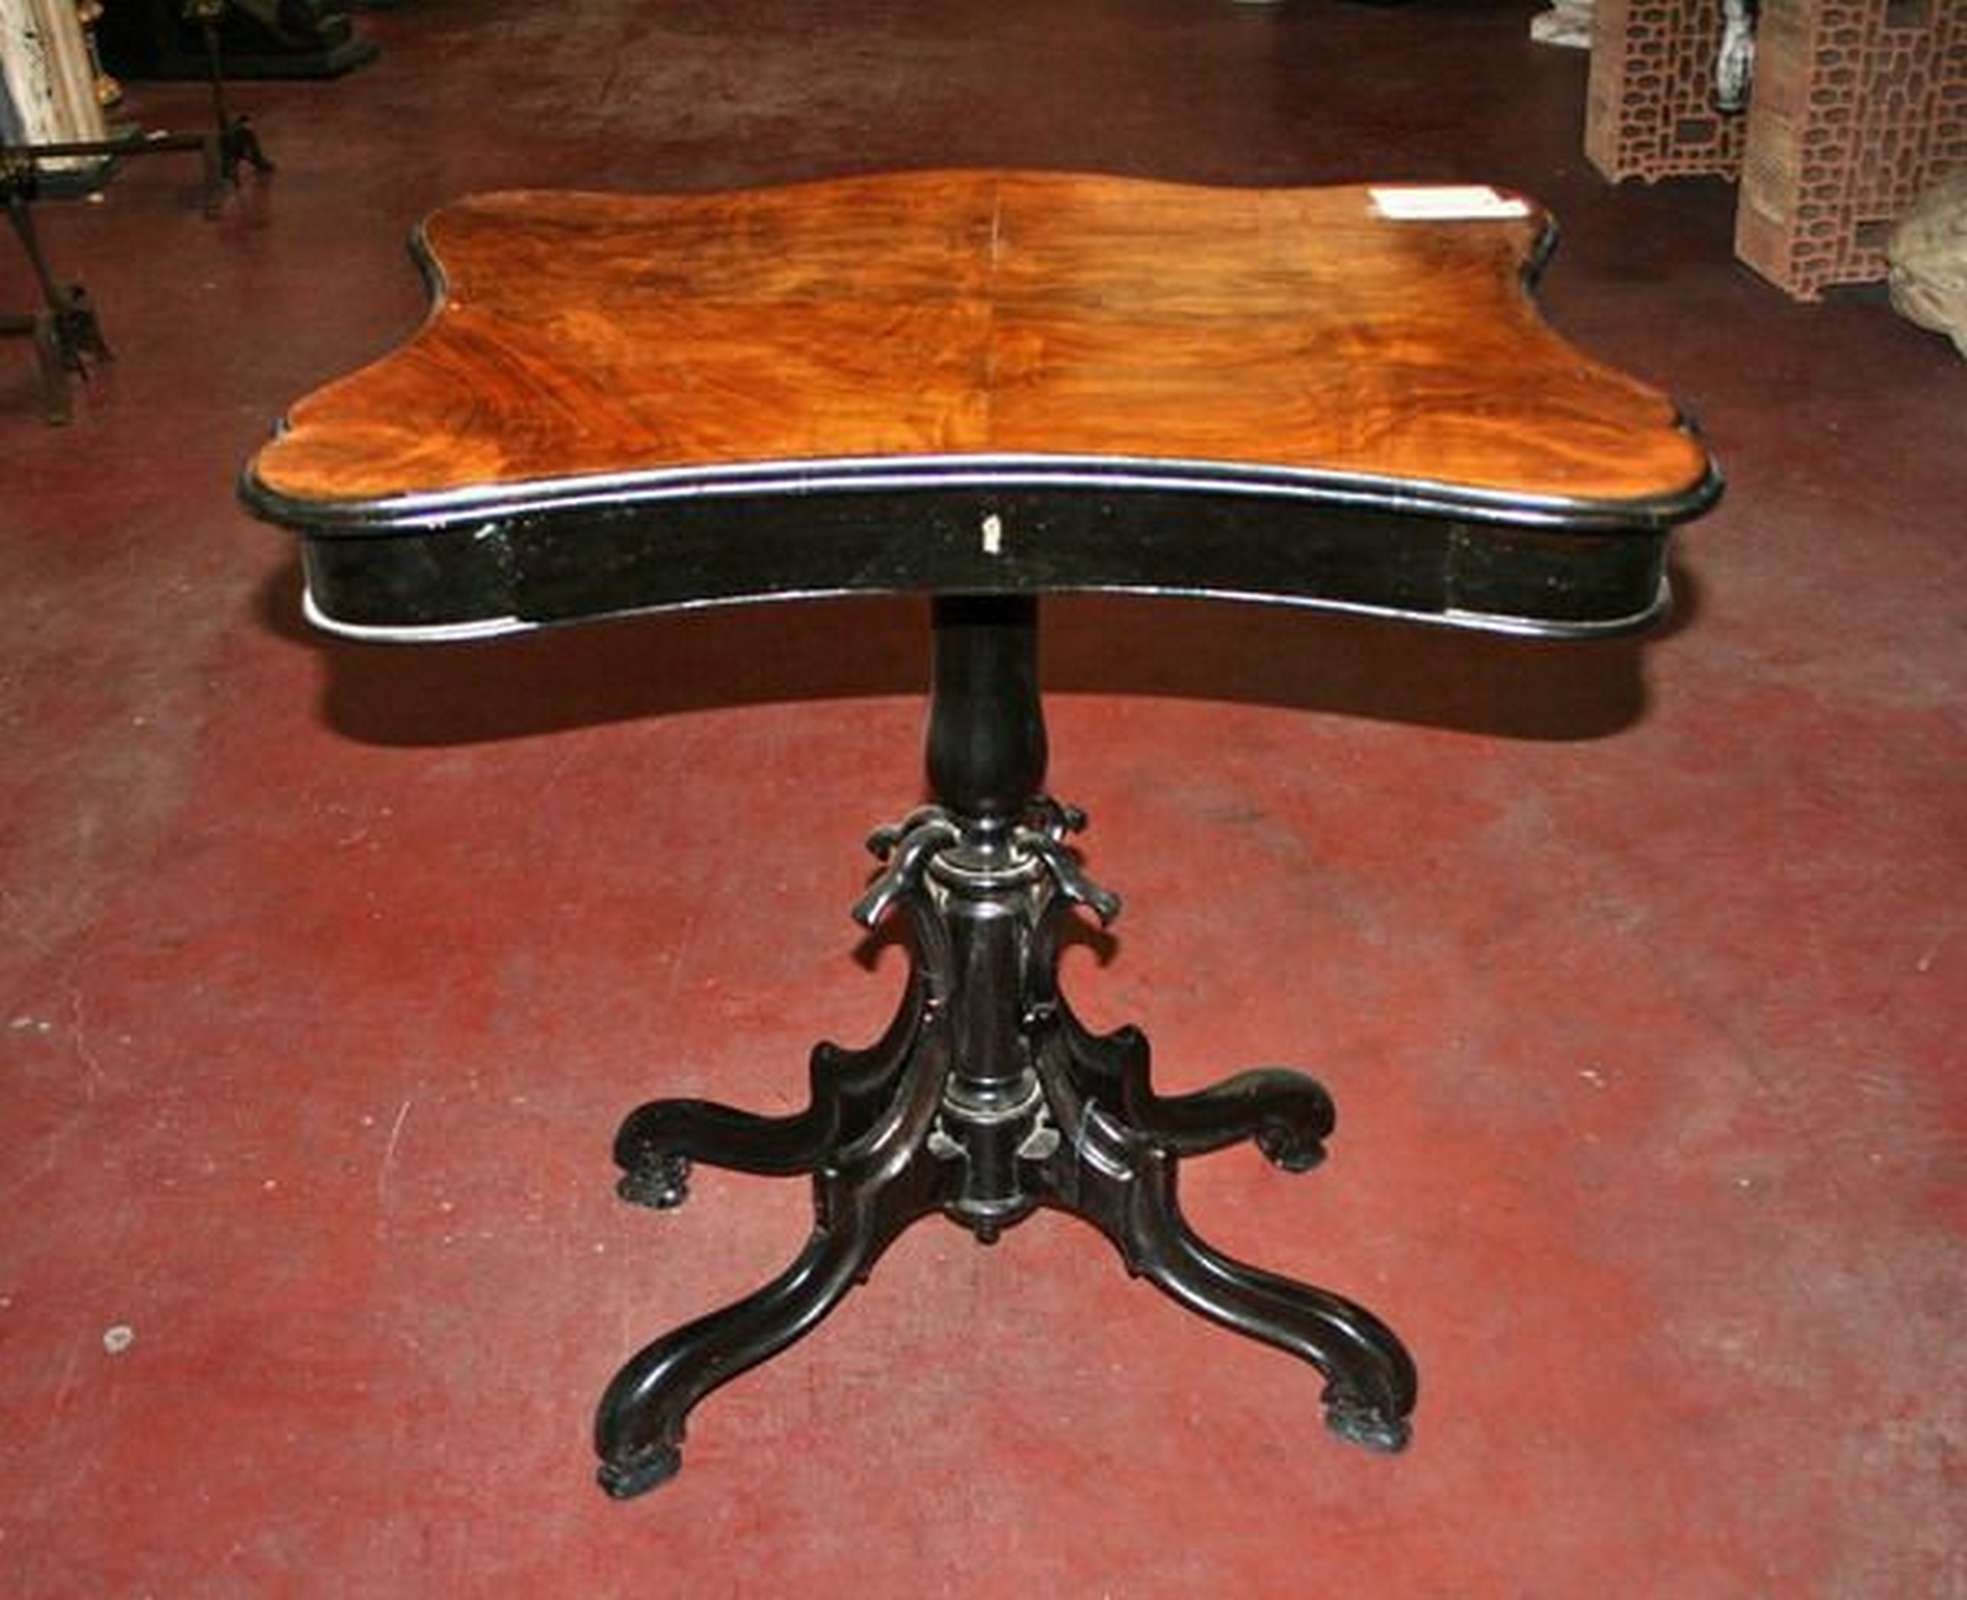 Antico tavolino in legno. Epoca 1800. - Tavoli Antichi - Mobili antichi - Prodotti - Antichità Fiorillo